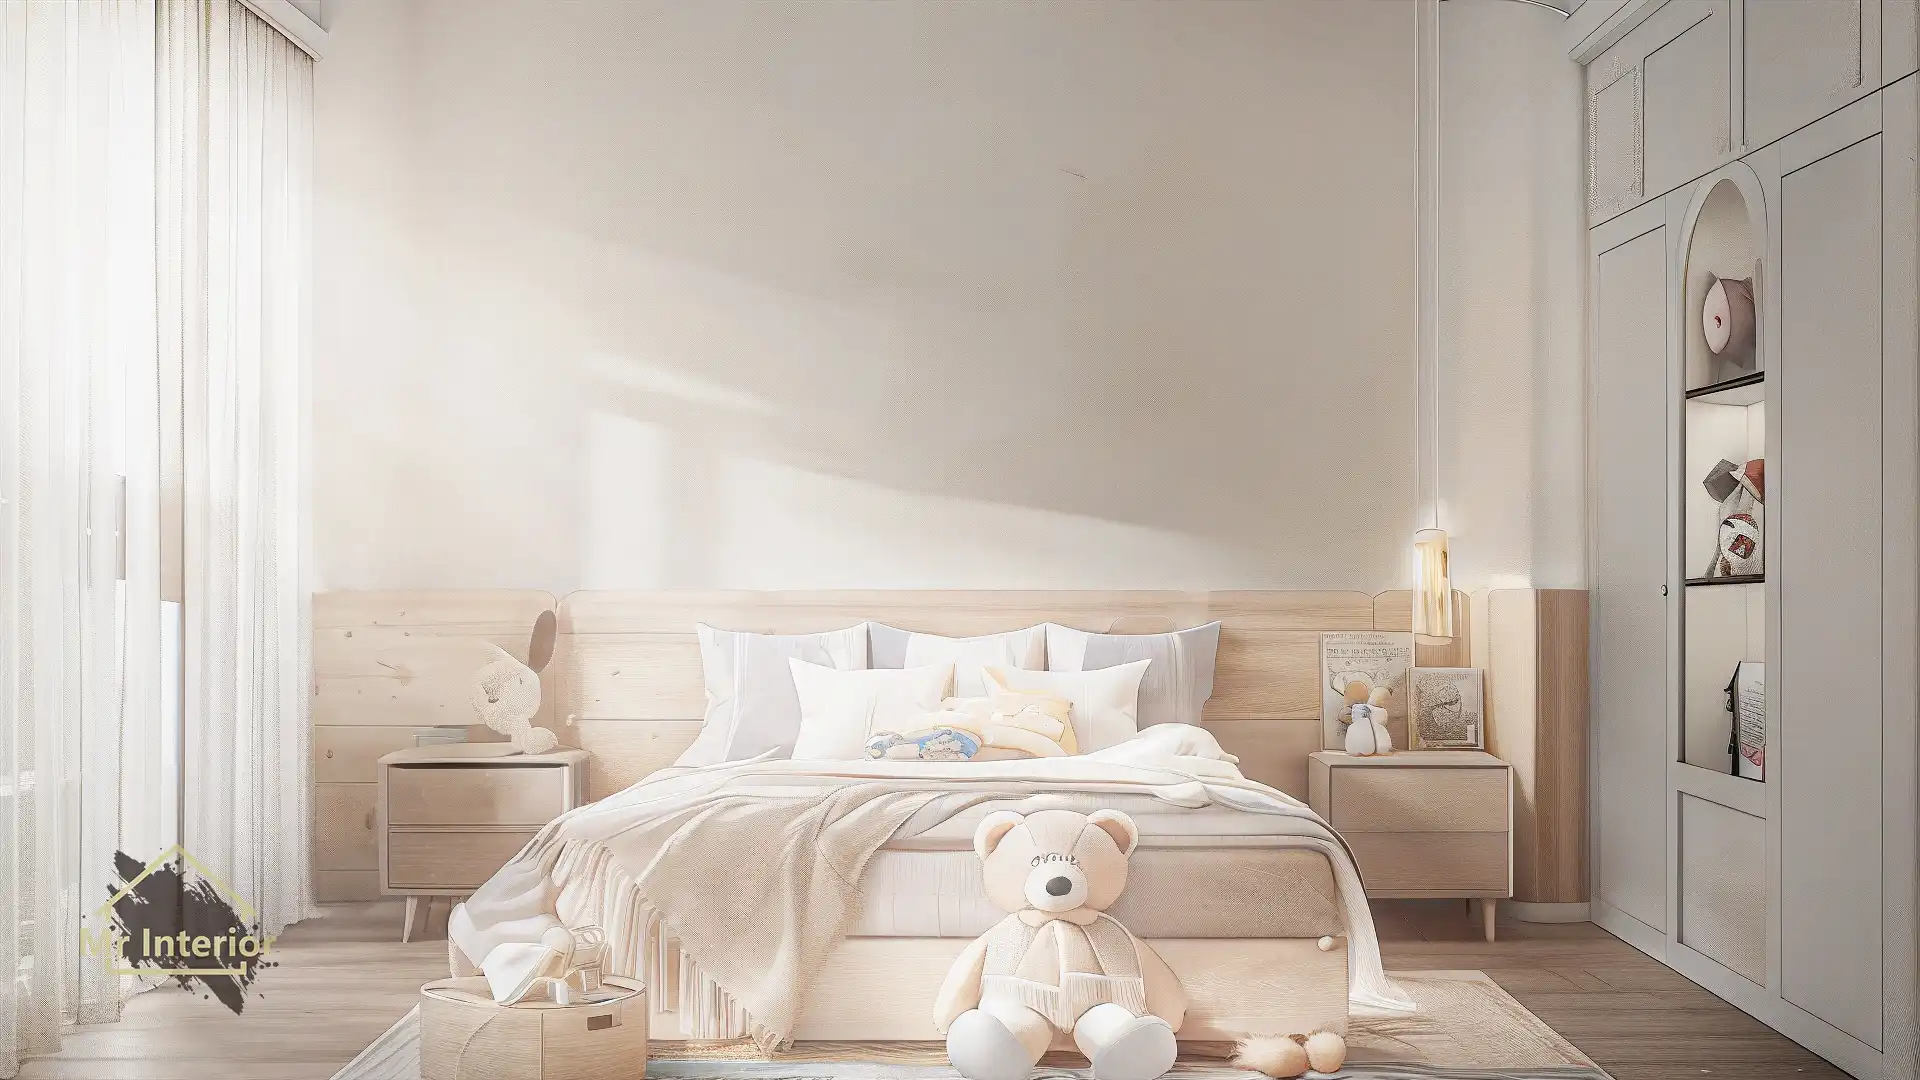 這是一個以無印風為主的明亮兒童房間，色調以米色主調為基礎，並以木色作為點綴。圖片中的裝修設計及傢俬展示了無印風設計的裝修及傢俬，例如雙人木床、木床屏、白色衣櫃，以及特色的木飾面床屏和素雅的白色牆身。此外，房間還配置了與無印風相搭配的木飾面床頭櫃、日式裝飾元素和充足的自然光照。這種設計風格營造出一個舒適、自然且富有和諧感的空間，非常適合兒童使用。Mr Interior室內設計裝修及傢俬風格。